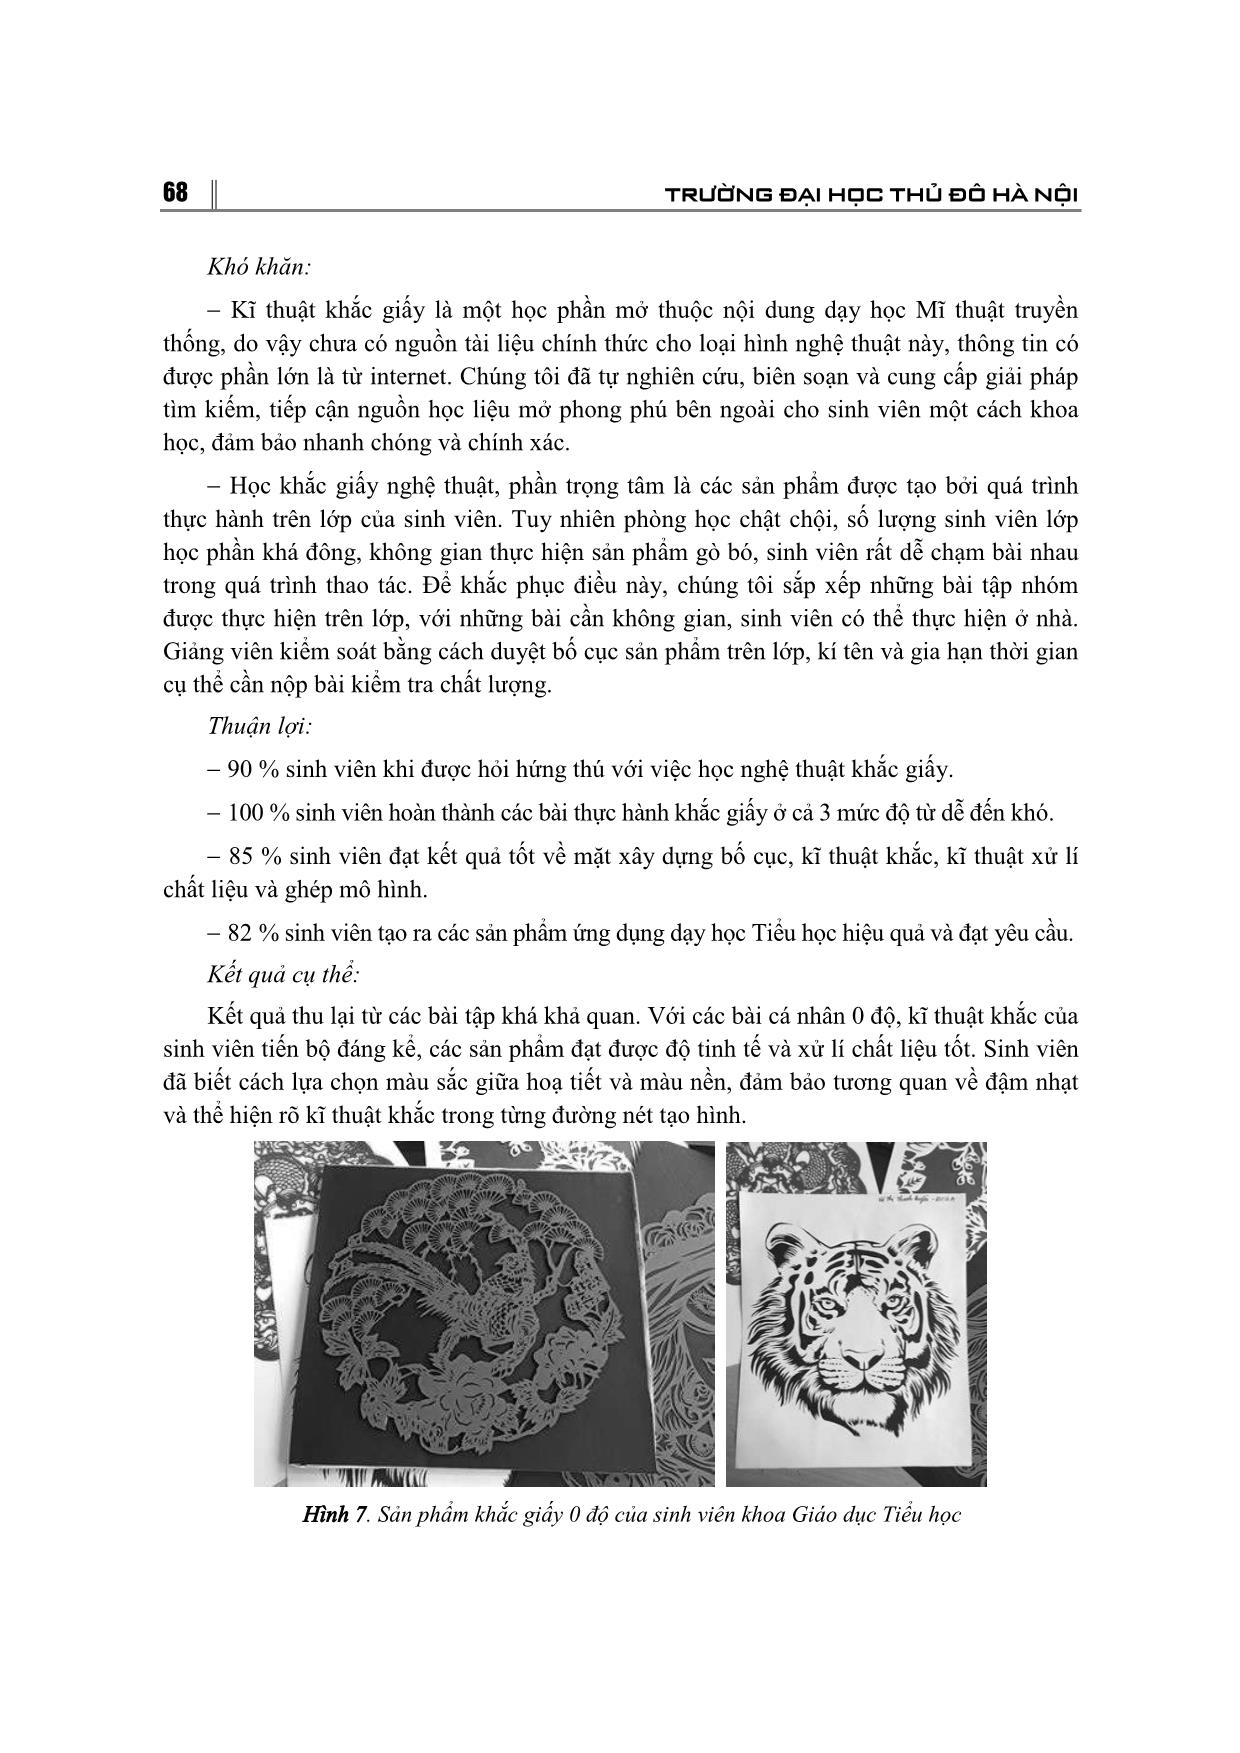 Sử dụng nghệ thuật khắc giấy trong dạy học mĩ thuật cho sinh viên ngành giáo dục tiểu học – Trường đại học thủ đô Hà Nội trang 7